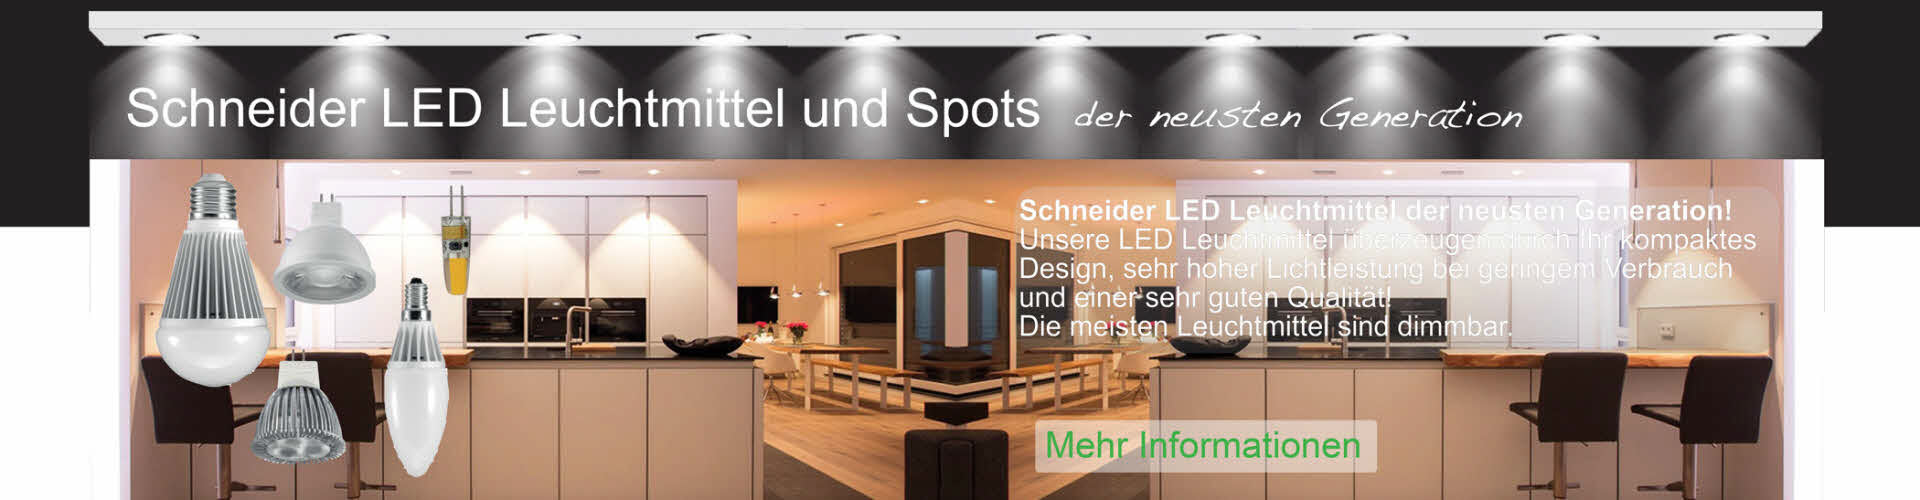 Schneider LED Leuchtmittel Spots Reflektorlampen der neusten Generation